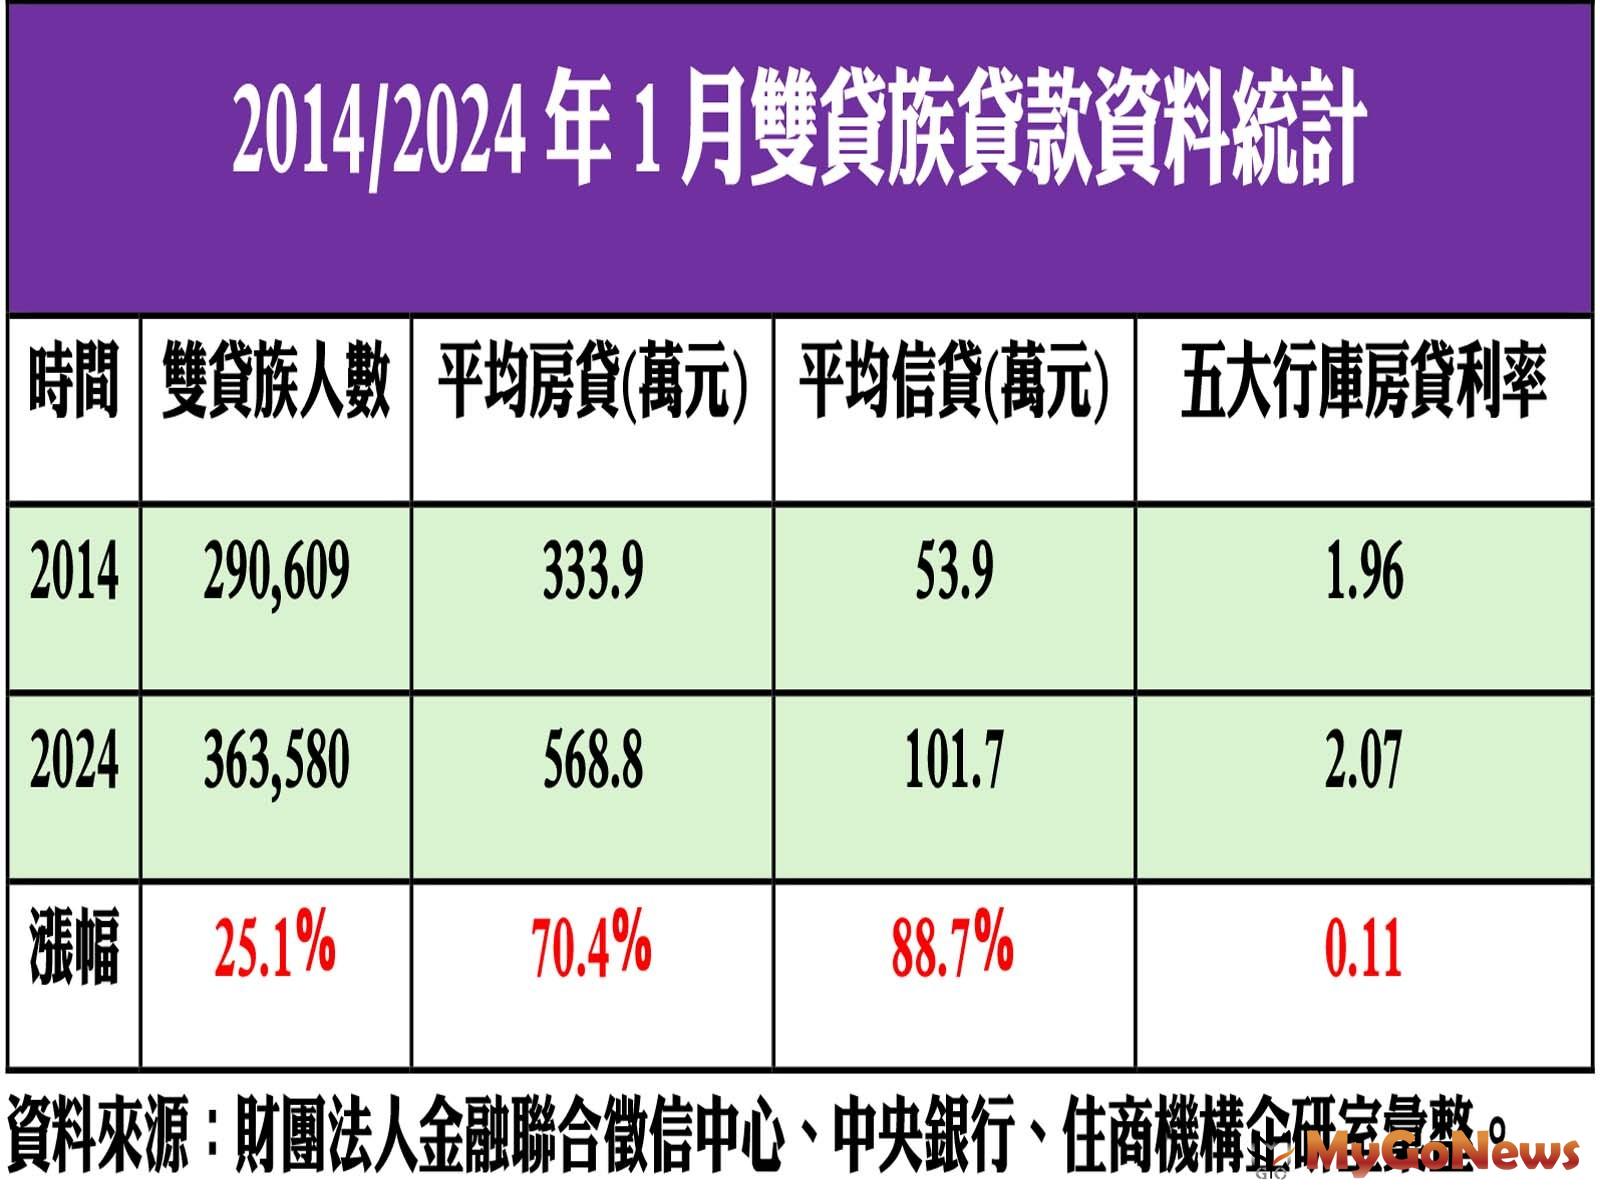 2014/2024年1月雙貸族貸款資料統計 MyGoNews房地產新聞 市場快訊